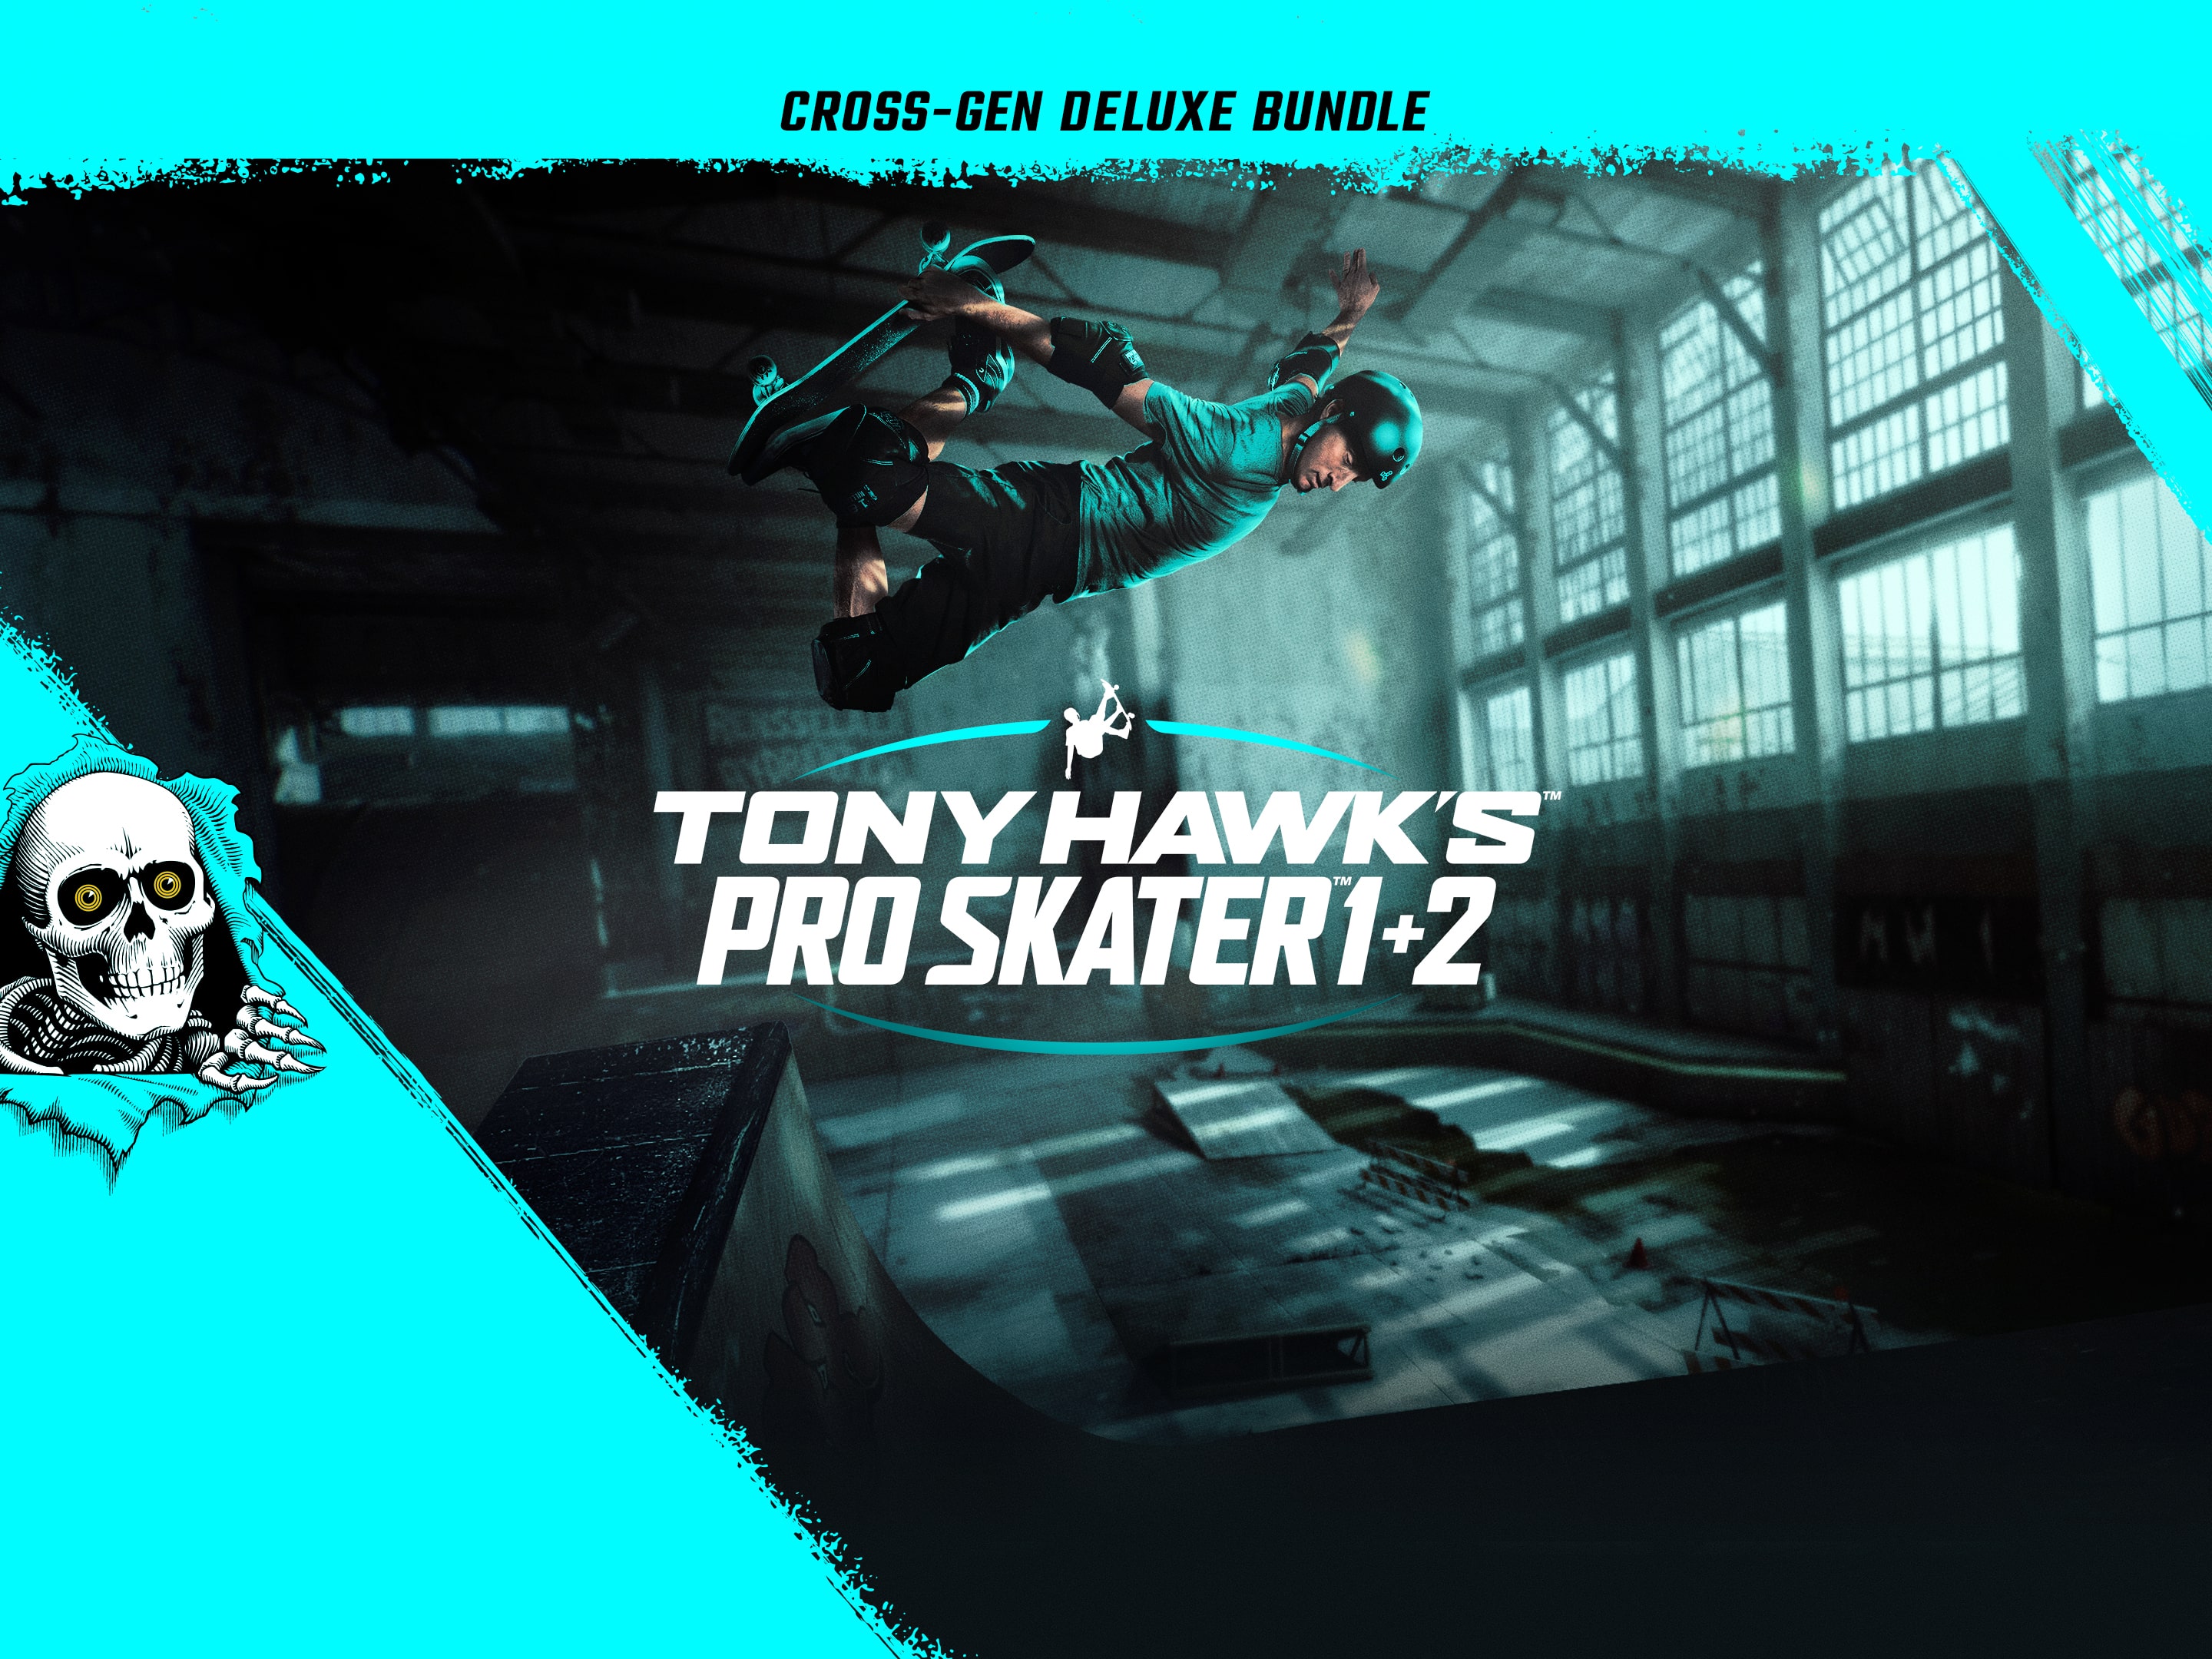 Tony Hawk's Pro Skater 1 and 2